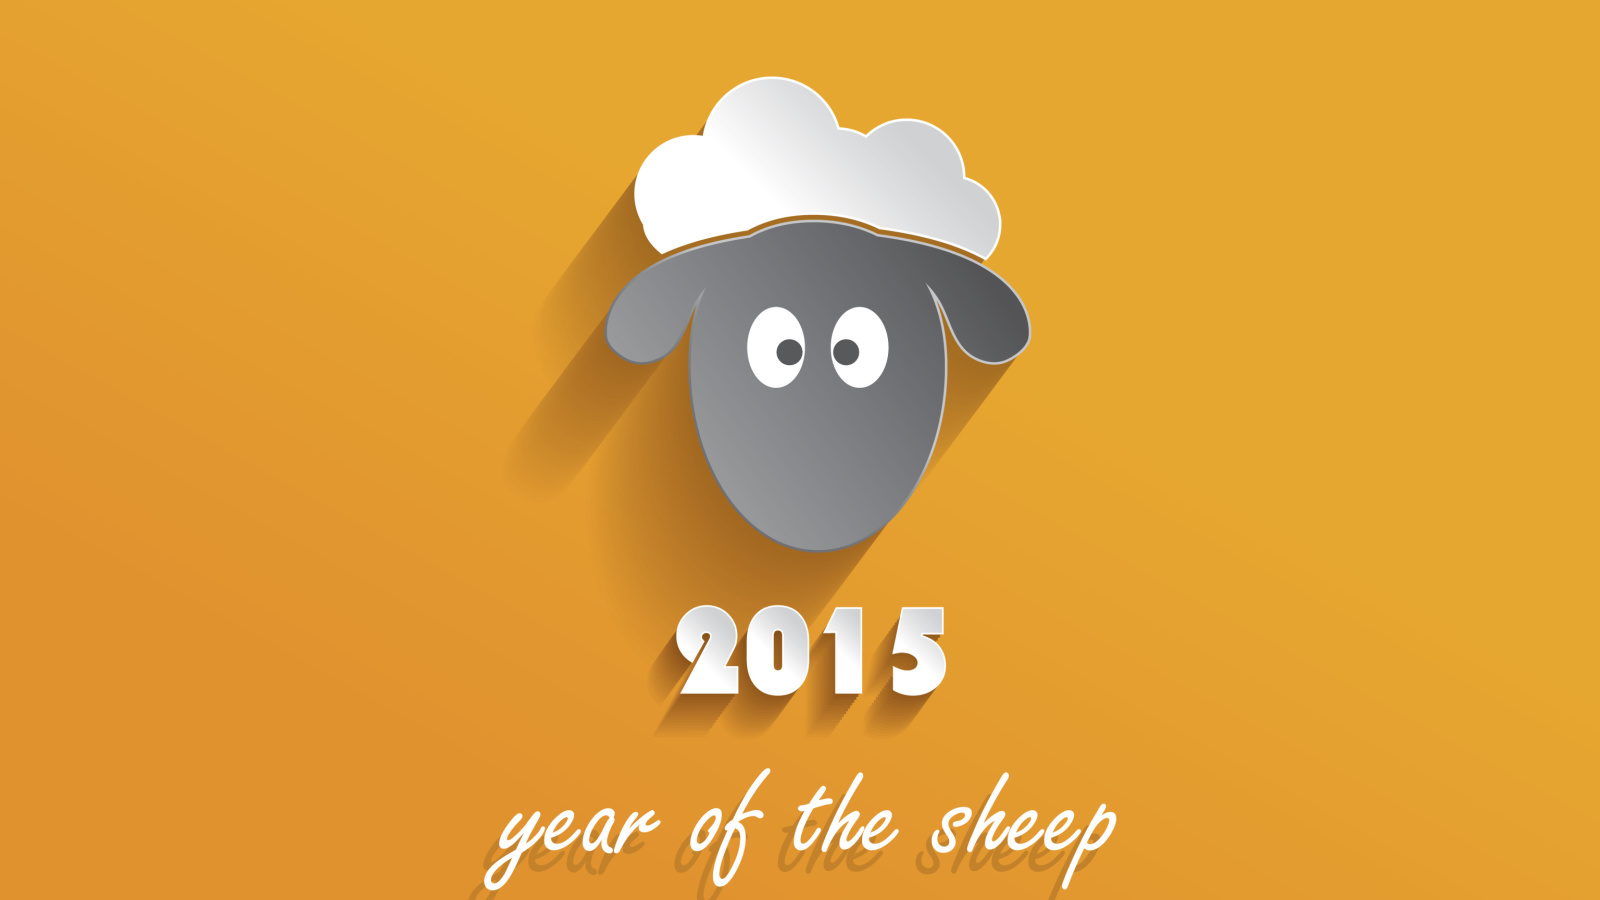 Обои Year of the Sheep 2015 1600x900